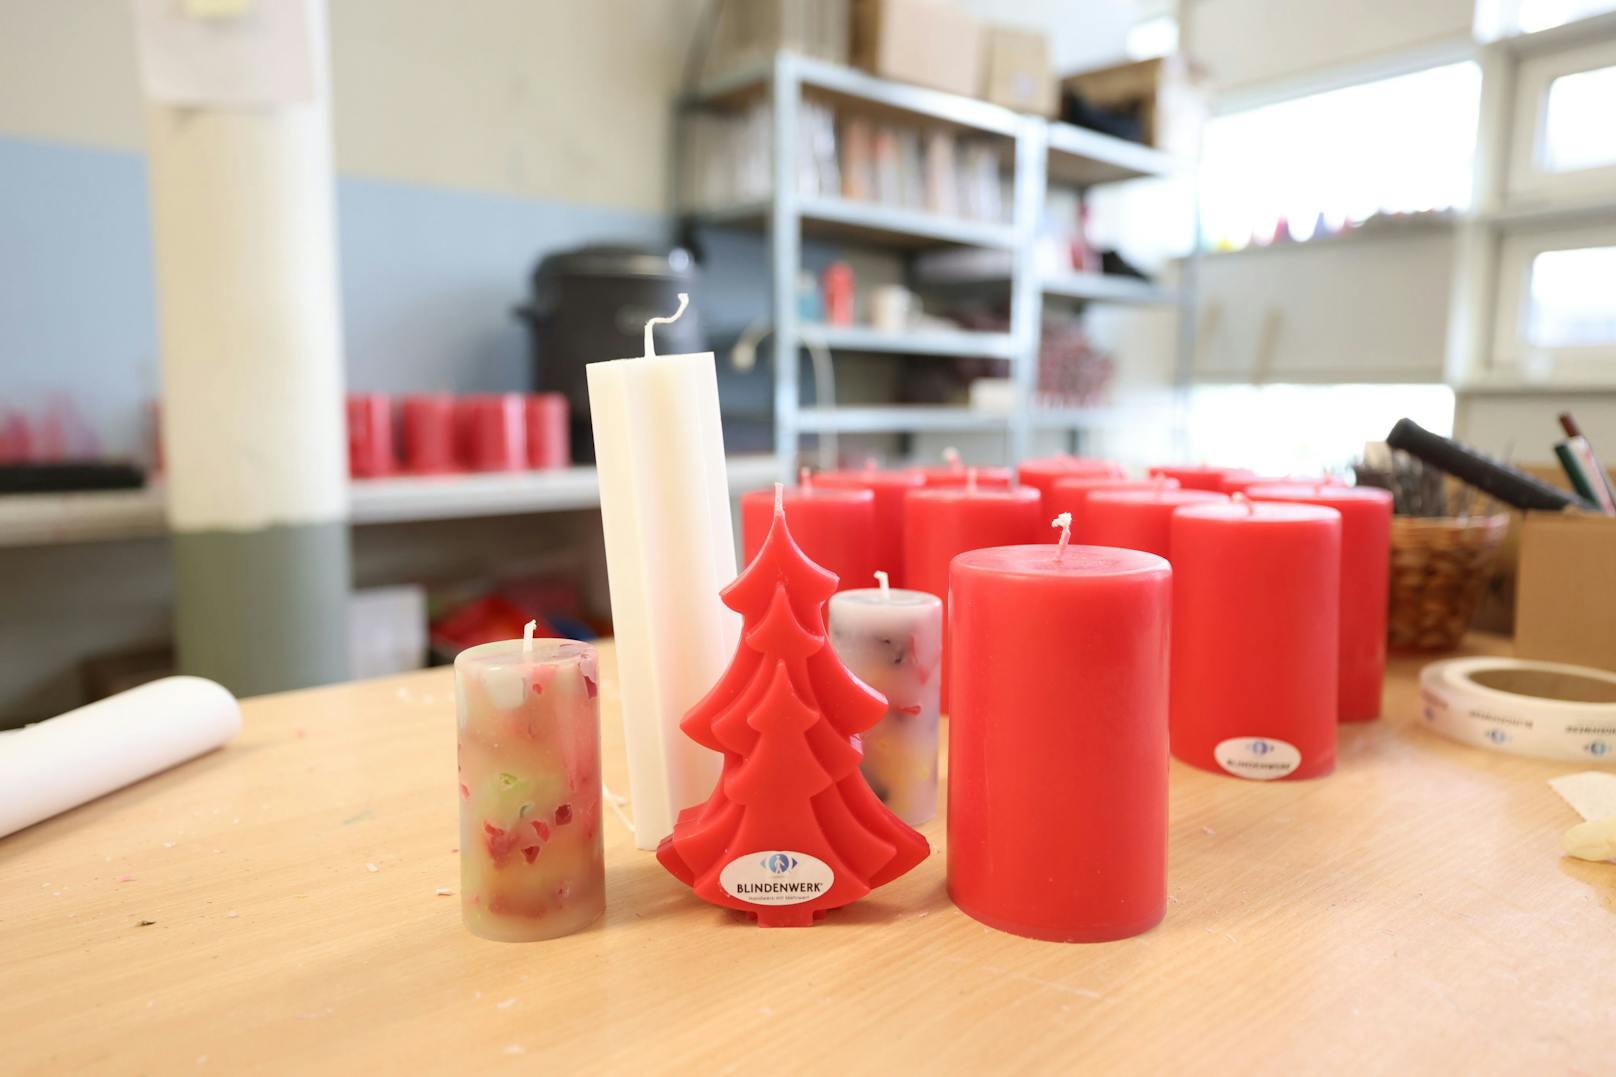 Der "Heute"-Tipp sind die Tannenbaum-Kerzen (gibt's in rot oder weiß) und die bunten Kerzen (links im Bild), die aus verschieden farbenen Wachsresten entstehen.